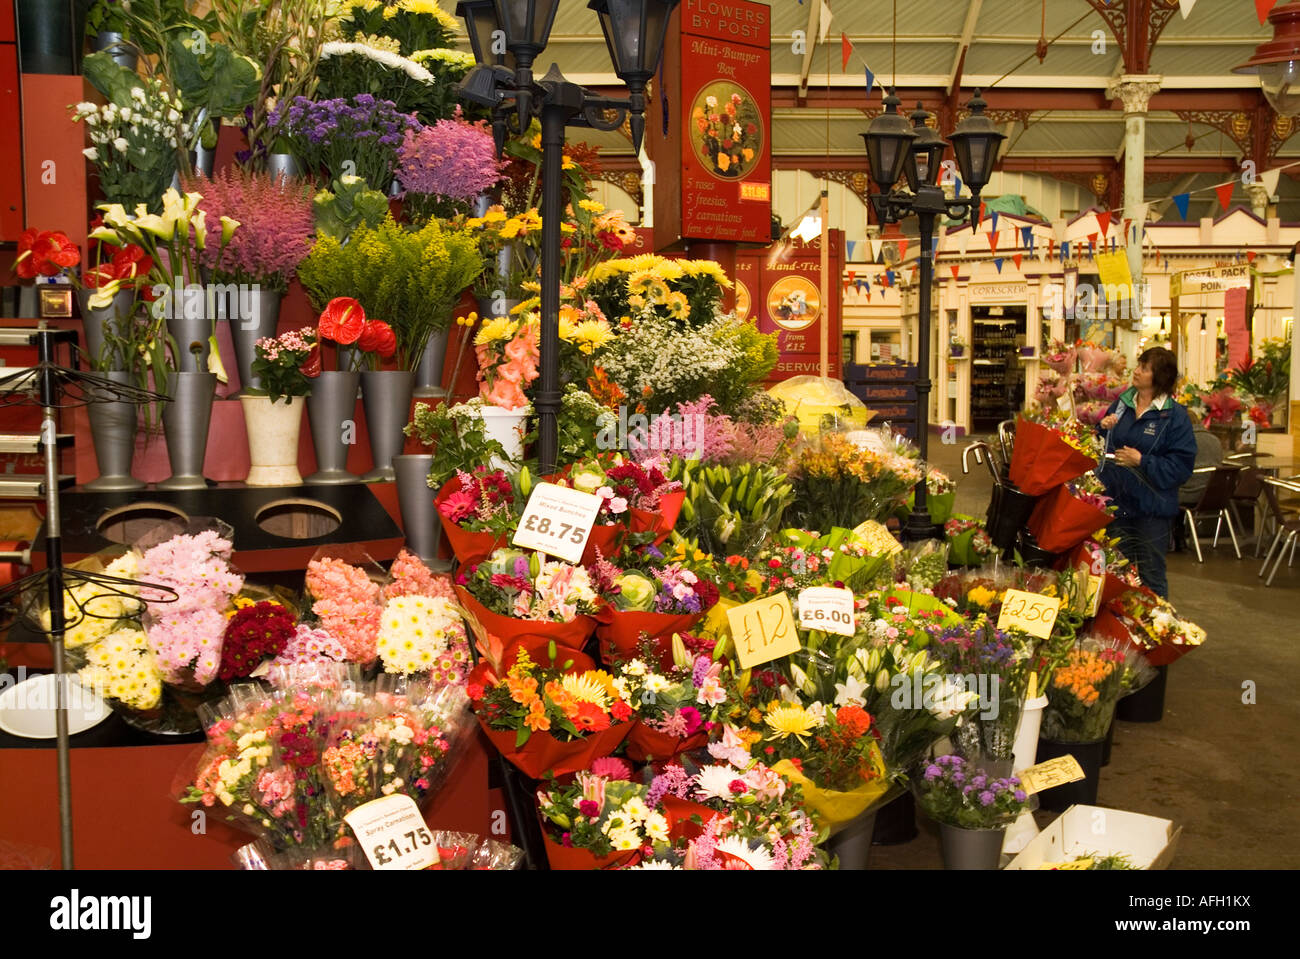 dh Halkett Place Market ST HELIER JERSEY ISLAND Central mercati interni di fiori vegetali canale isole stallo Foto Stock